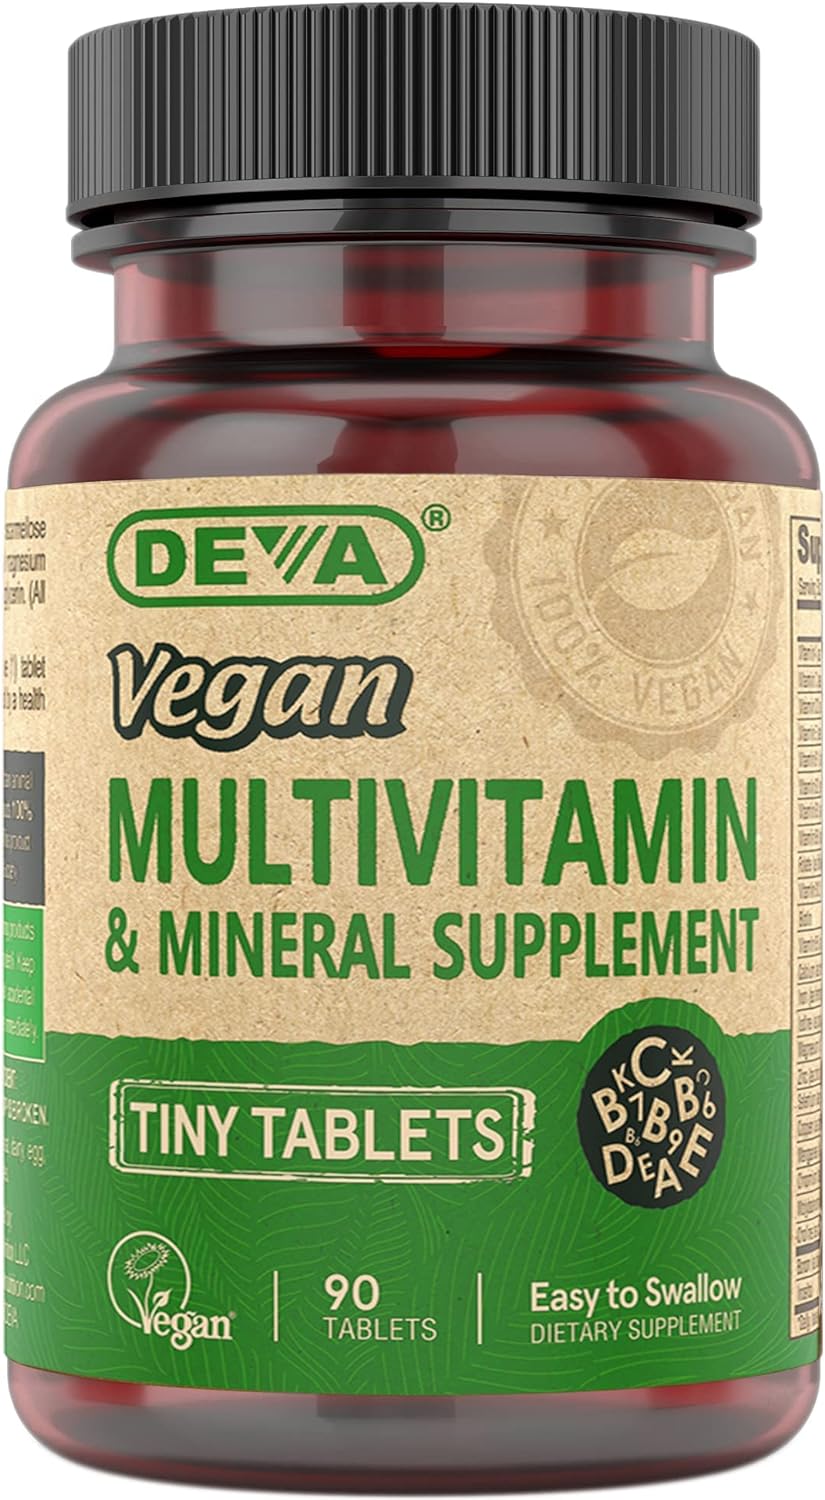 DEVA Tiny Tablets Vegan Multivitamins for Women & Men, Multivitamin wi